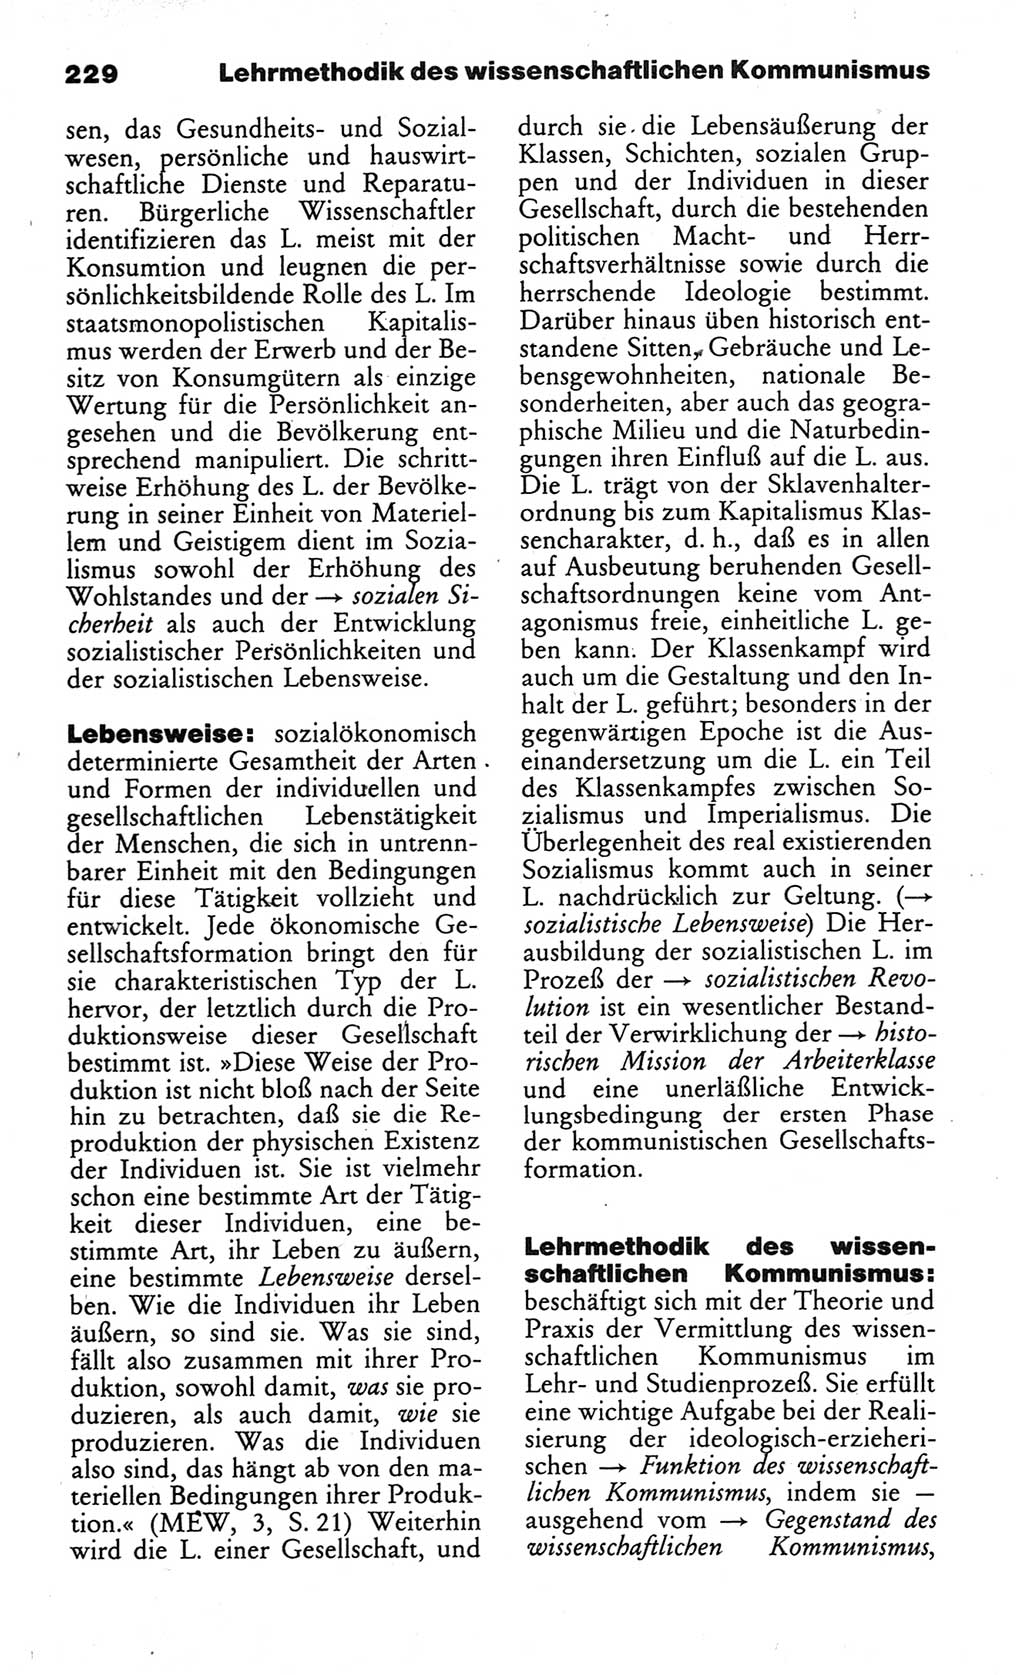 Wörterbuch des wissenschaftlichen Kommunismus [Deutsche Demokratische Republik (DDR)] 1984, Seite 229 (Wb. wiss. Komm. DDR 1984, S. 229)